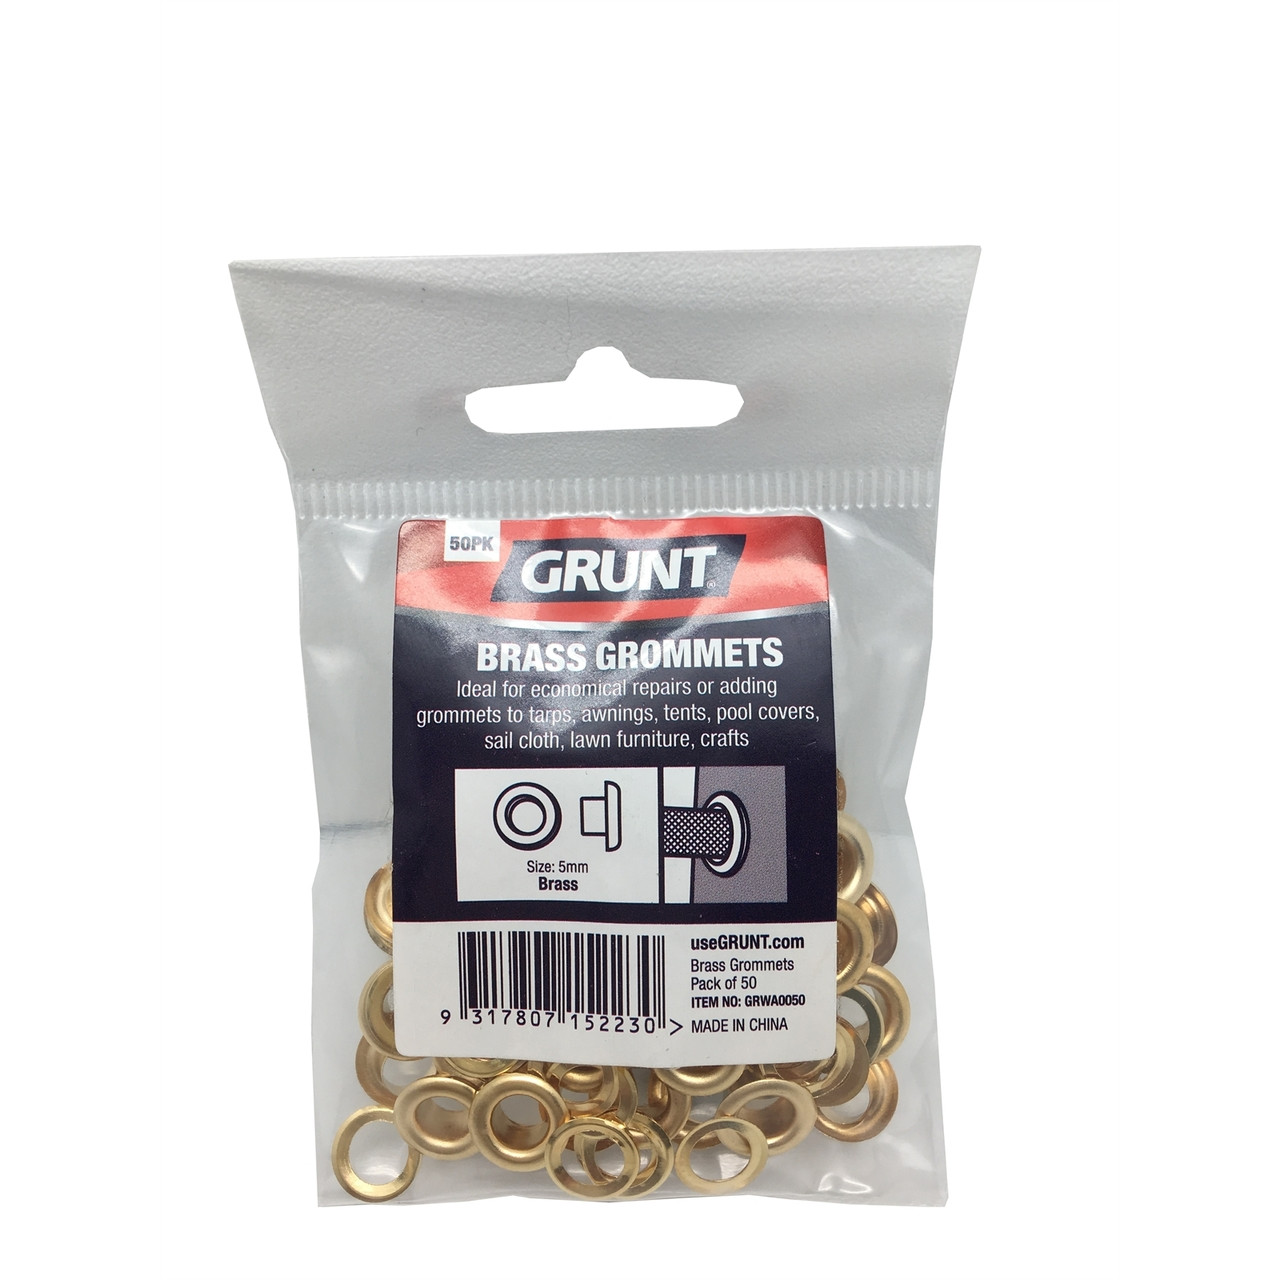 Grunt 5mm Brass Grommets - 50 Pack - Bunnings Australia